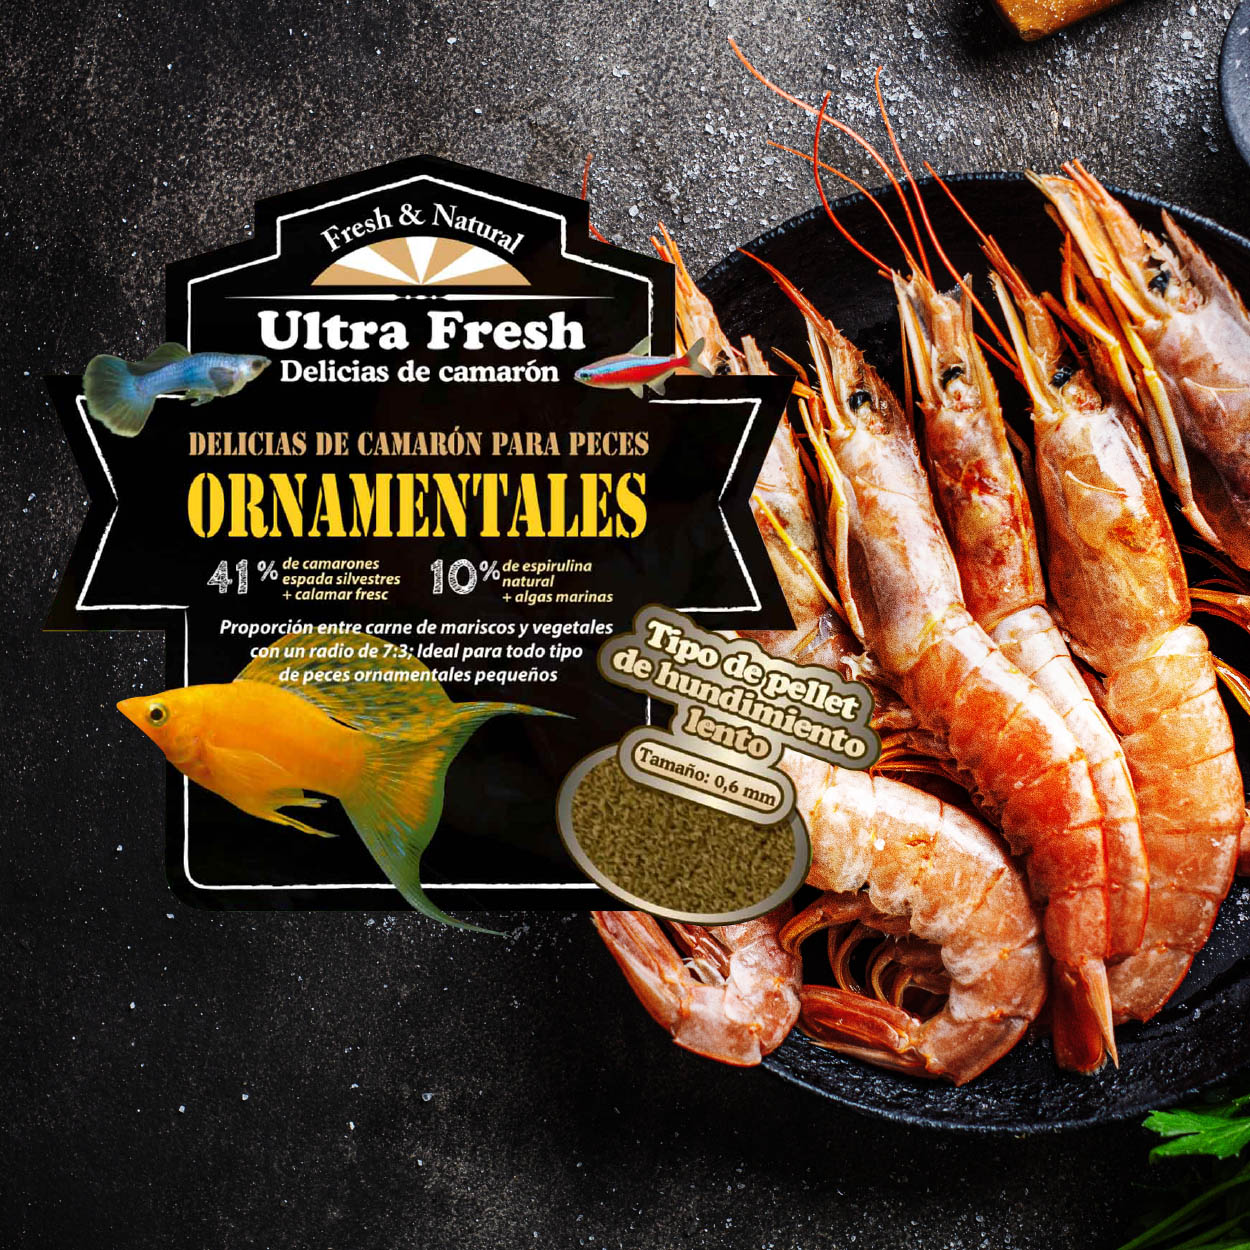 Nuevo alimento Ultra-Fresh "Delicias de camarón"